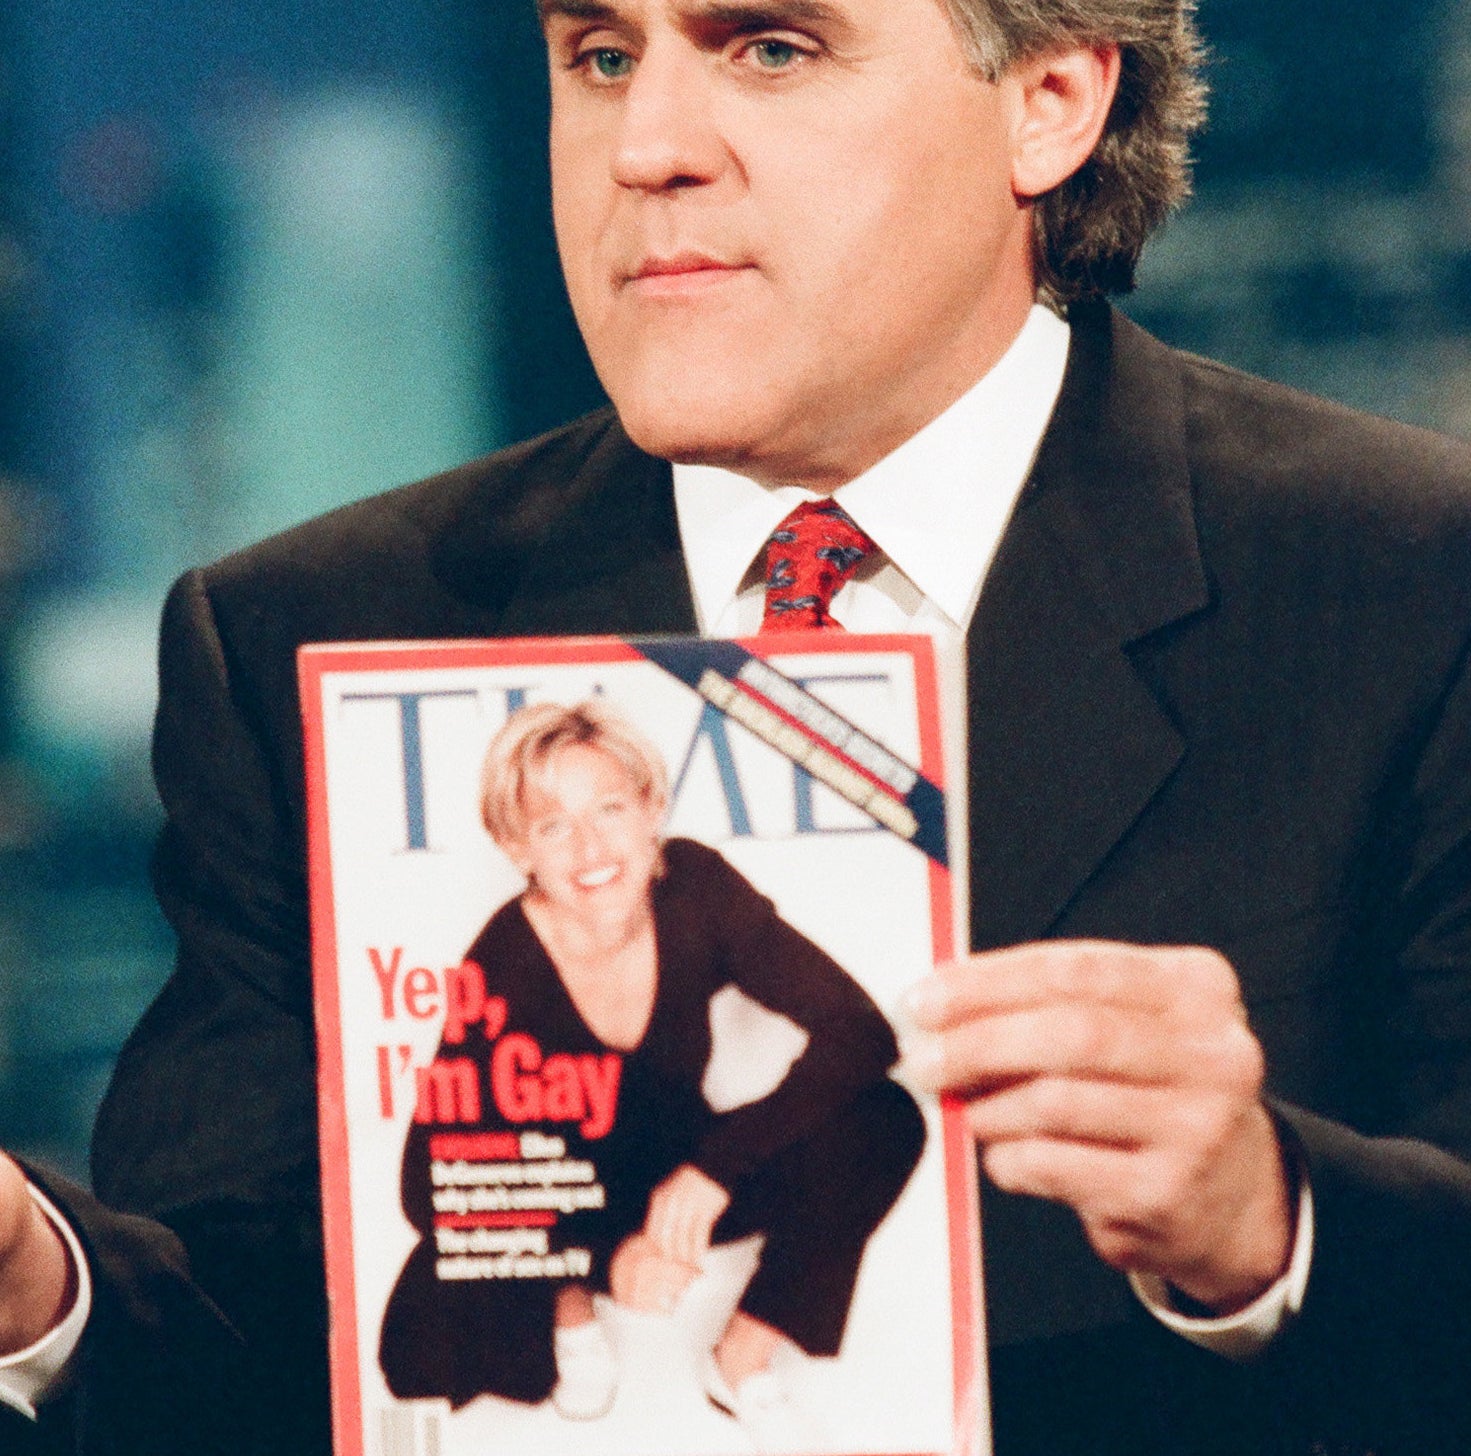 一个男人拥有《时代》杂志的封面,这显示了艾伦·德杰尼勒斯蹲和文本“是的,我# x27; m Gay"